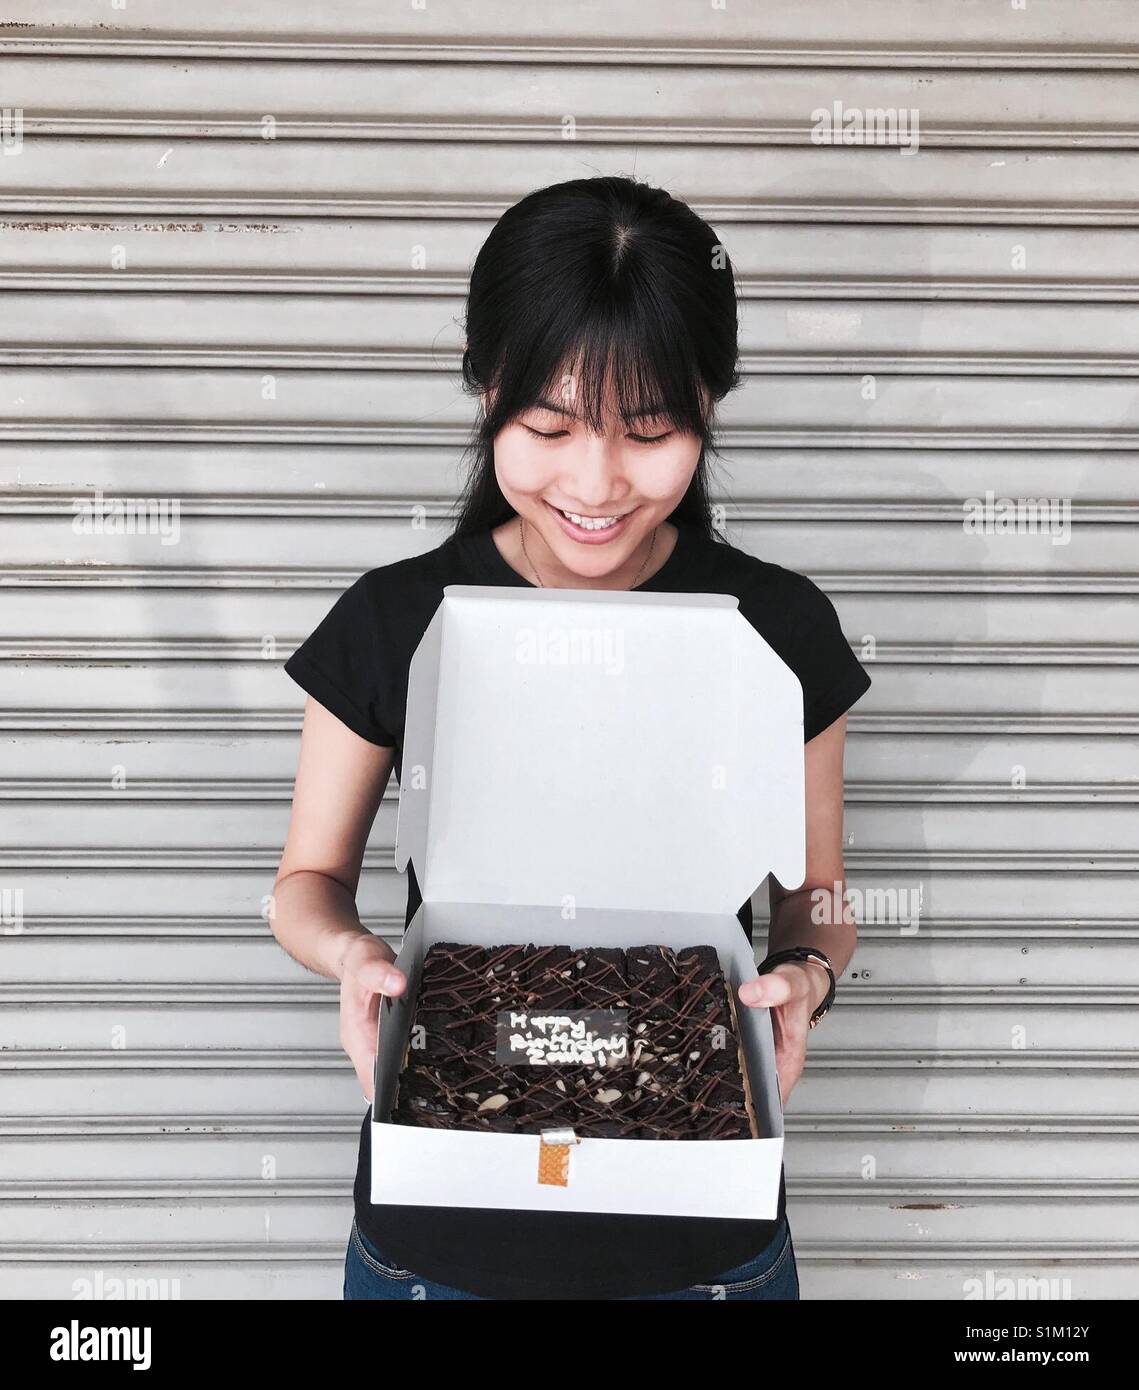 Cumpleaños niña que recibió una caja de chocolates B R O W N I E S de su iglesia amigos. Foto de stock